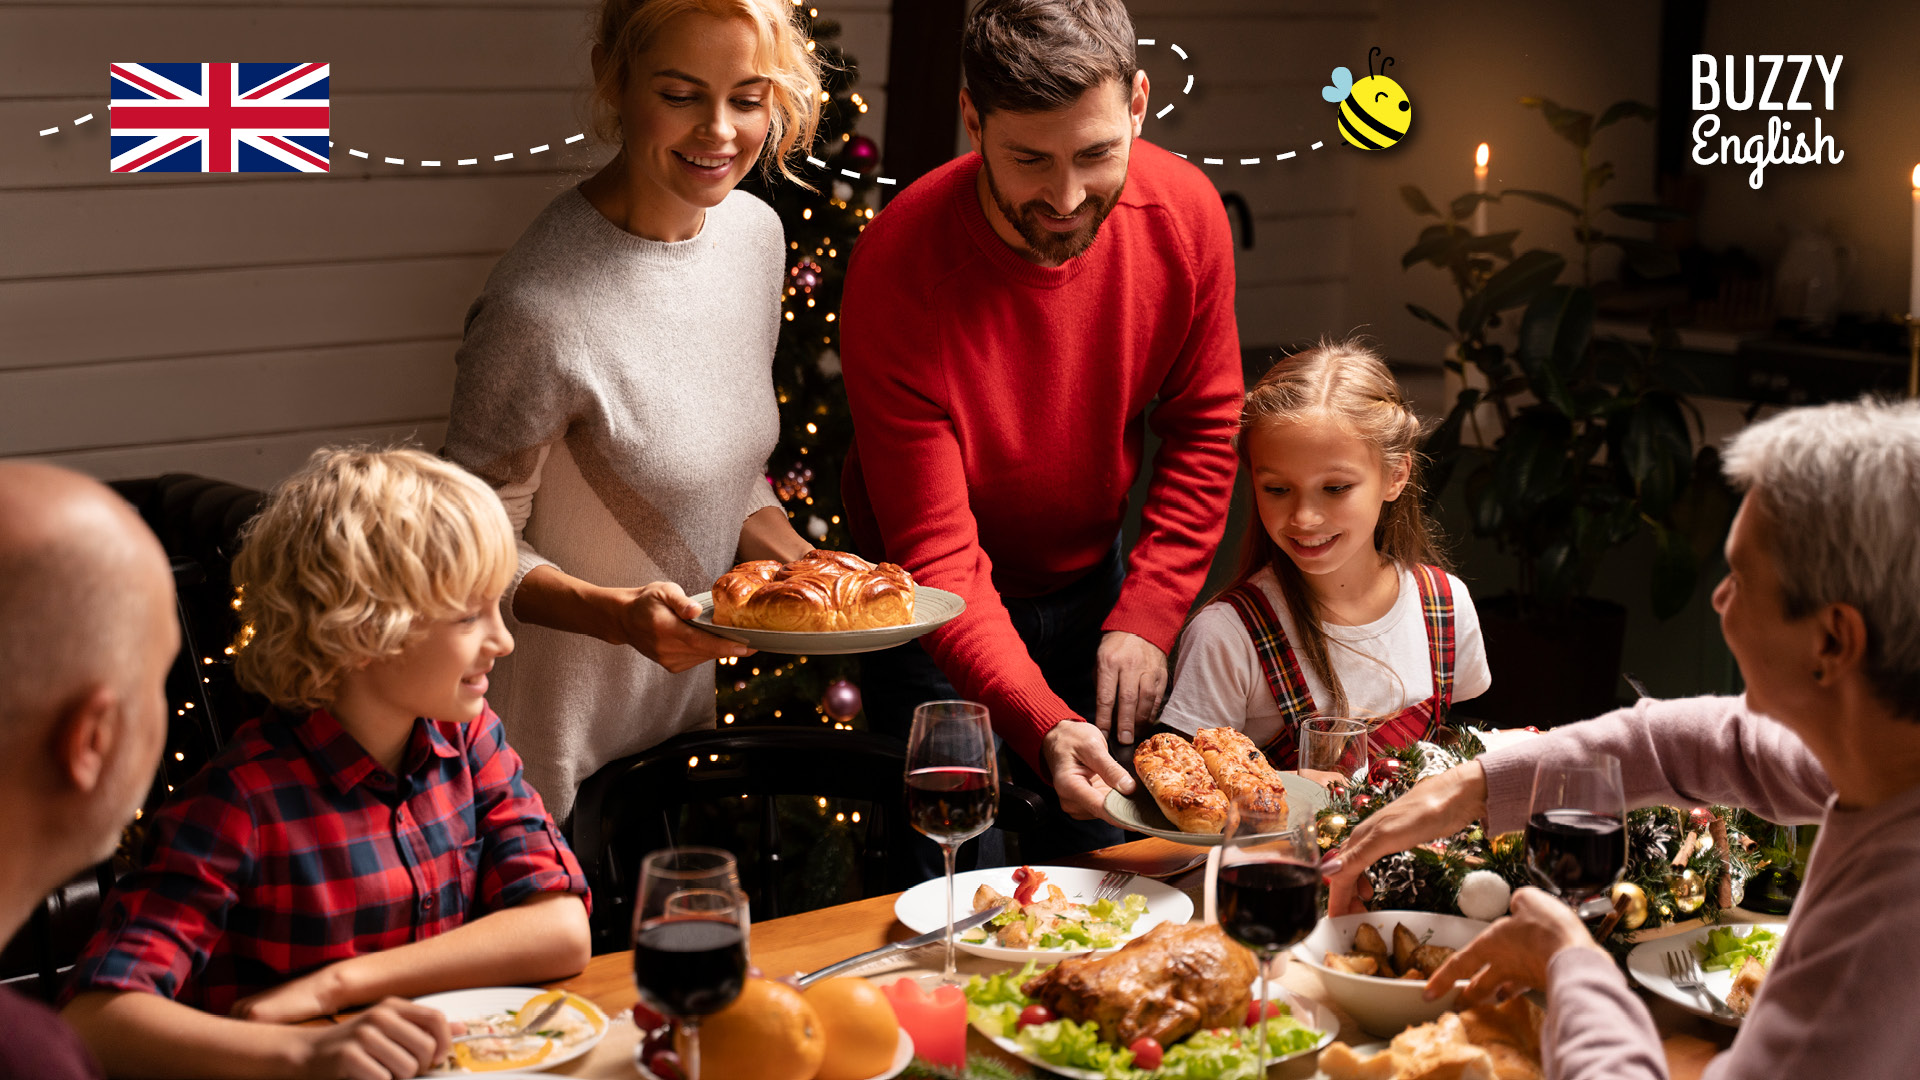 Il Natale a tavola  un momento per ritrovarsi e condividere un momento speciale insieme. I piatti della tradizione fanno da saporita cornice a questa festivit.